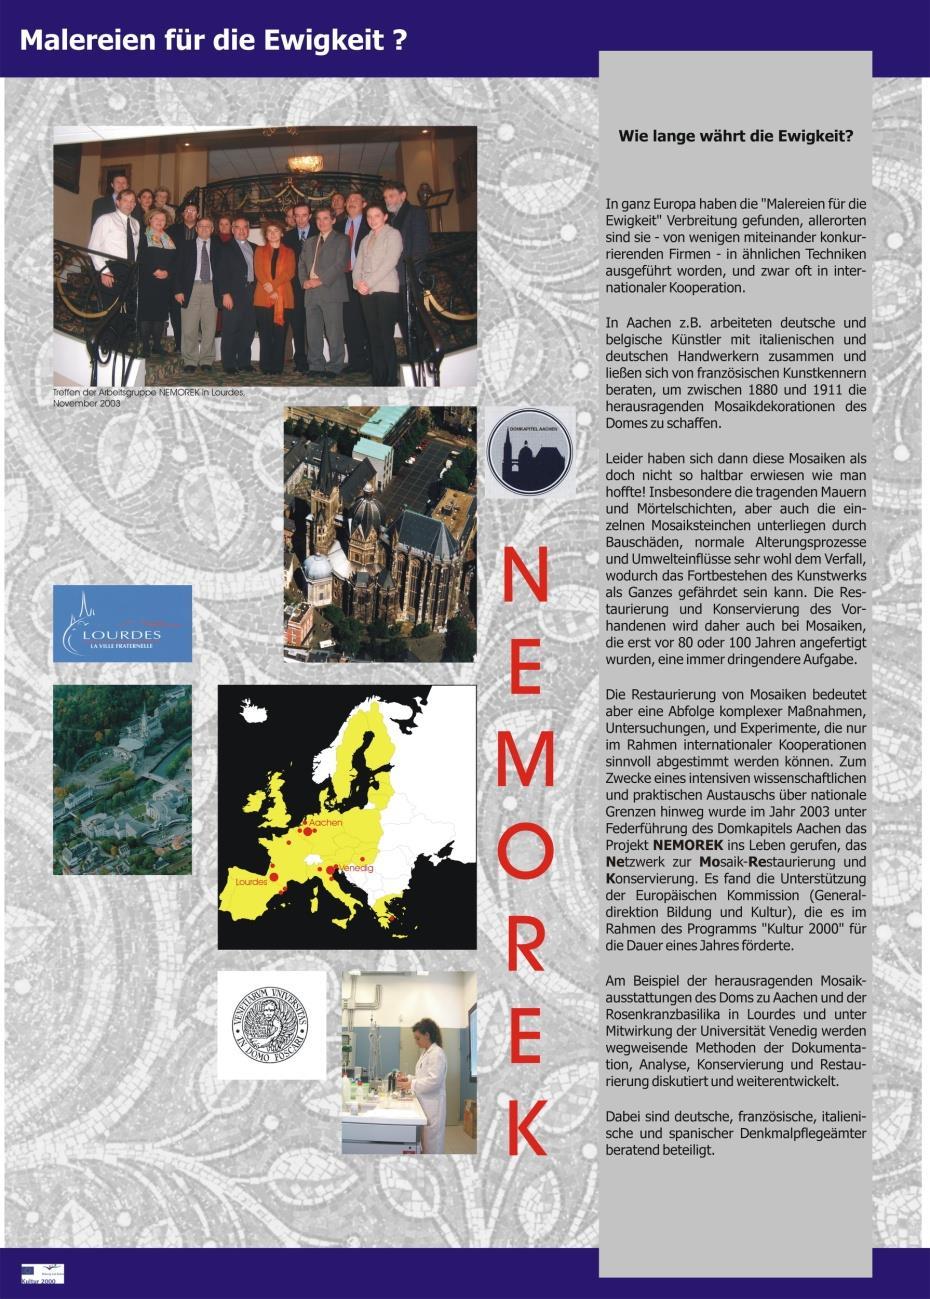 Karolingischer Zentralbau innen Sanierung Mosaik, Marmorplatten und Fußboden NEMOREK EU-Projekt mit Lourdes und Venedig (2002 und 2003) - diente zur Vorbereitung der Maßnahmen in